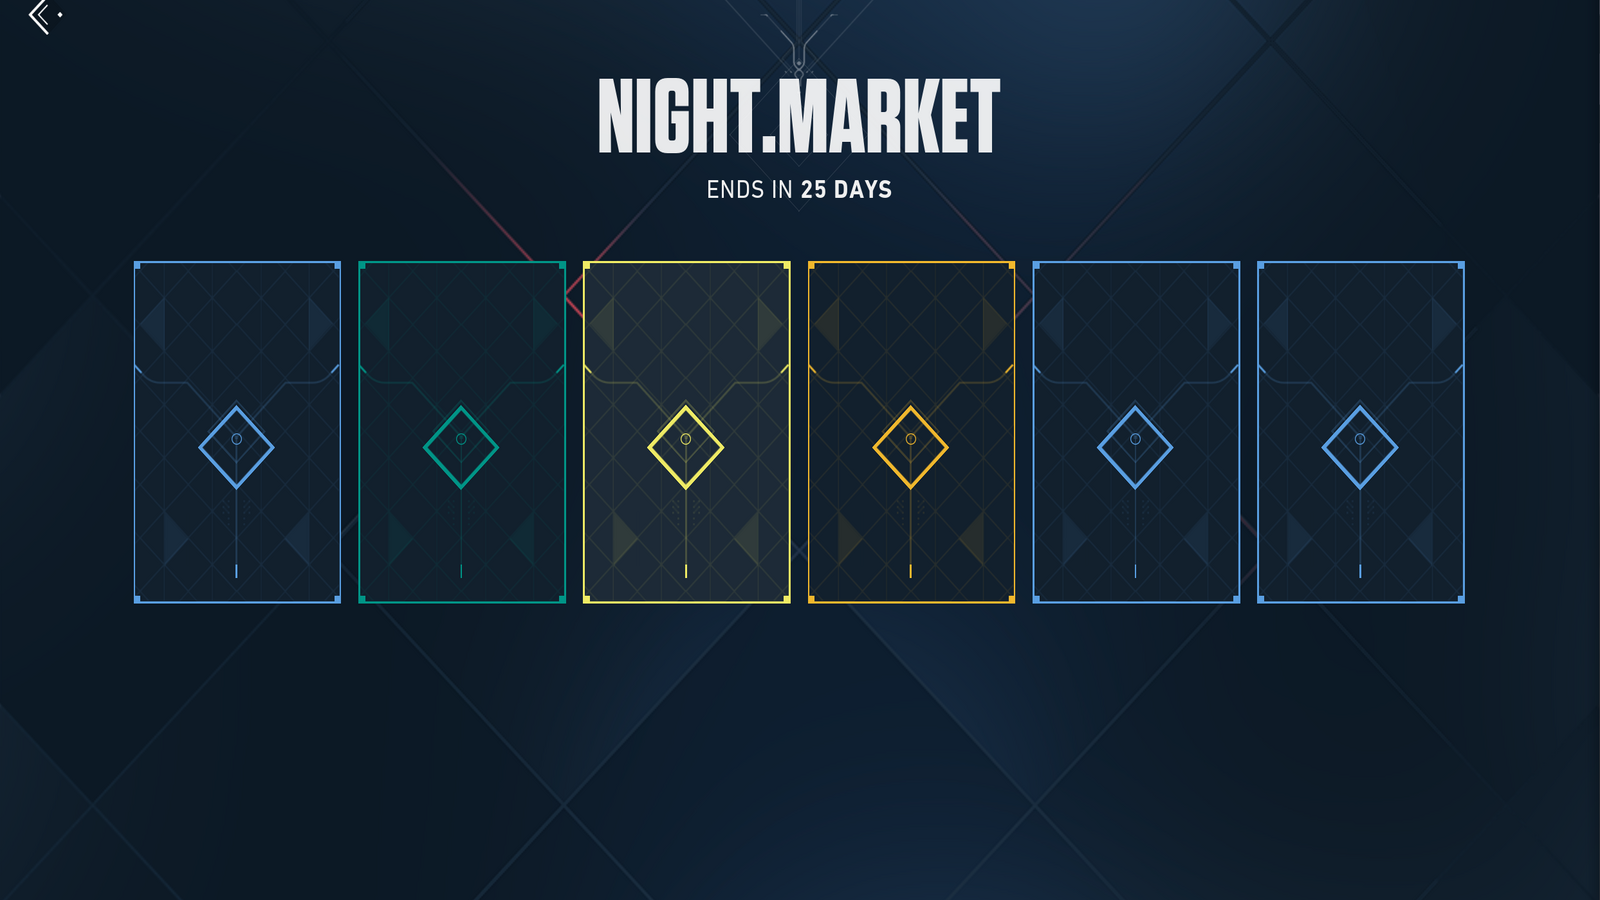 Zrzut ekranu nowego rynku nocnego, przy czym każda skóra wciąż jest ukryta za kartą ujawniającą